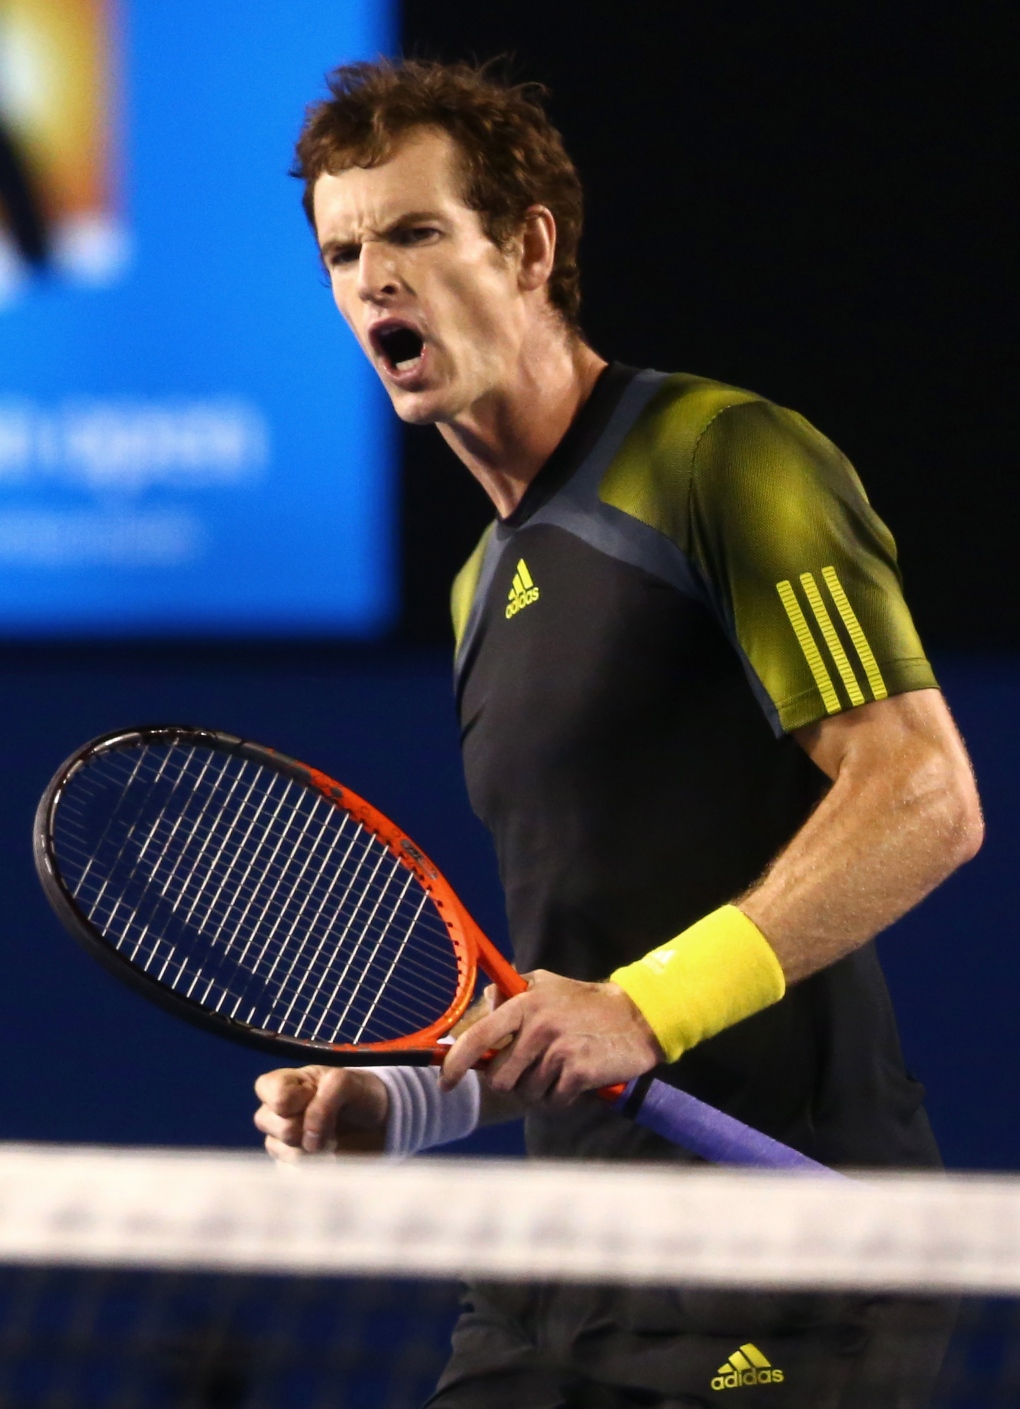 Murray beats Federer in a Grand Slam match, advances to Australian Open